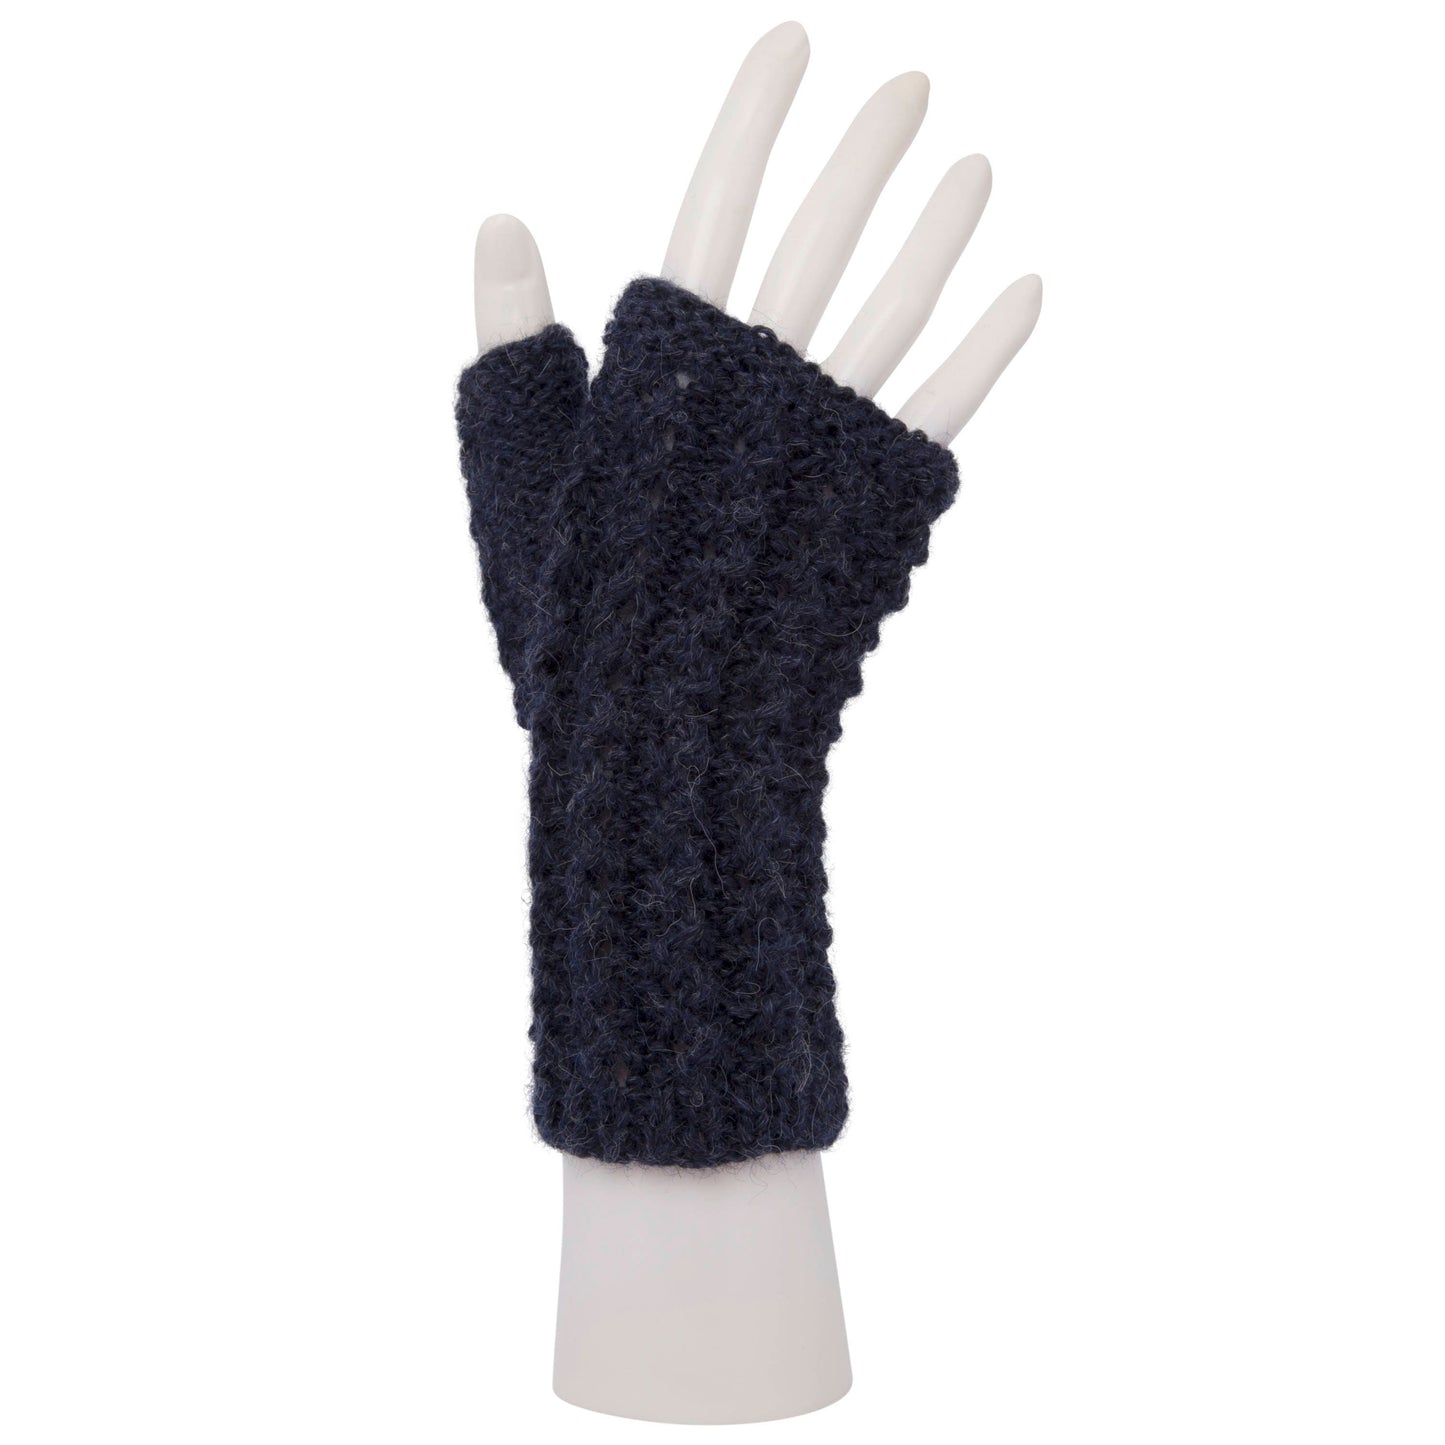 100% Alpaca Fingerless Mittens, Gloves, Wristwarmers, Fair trade, ethical gift